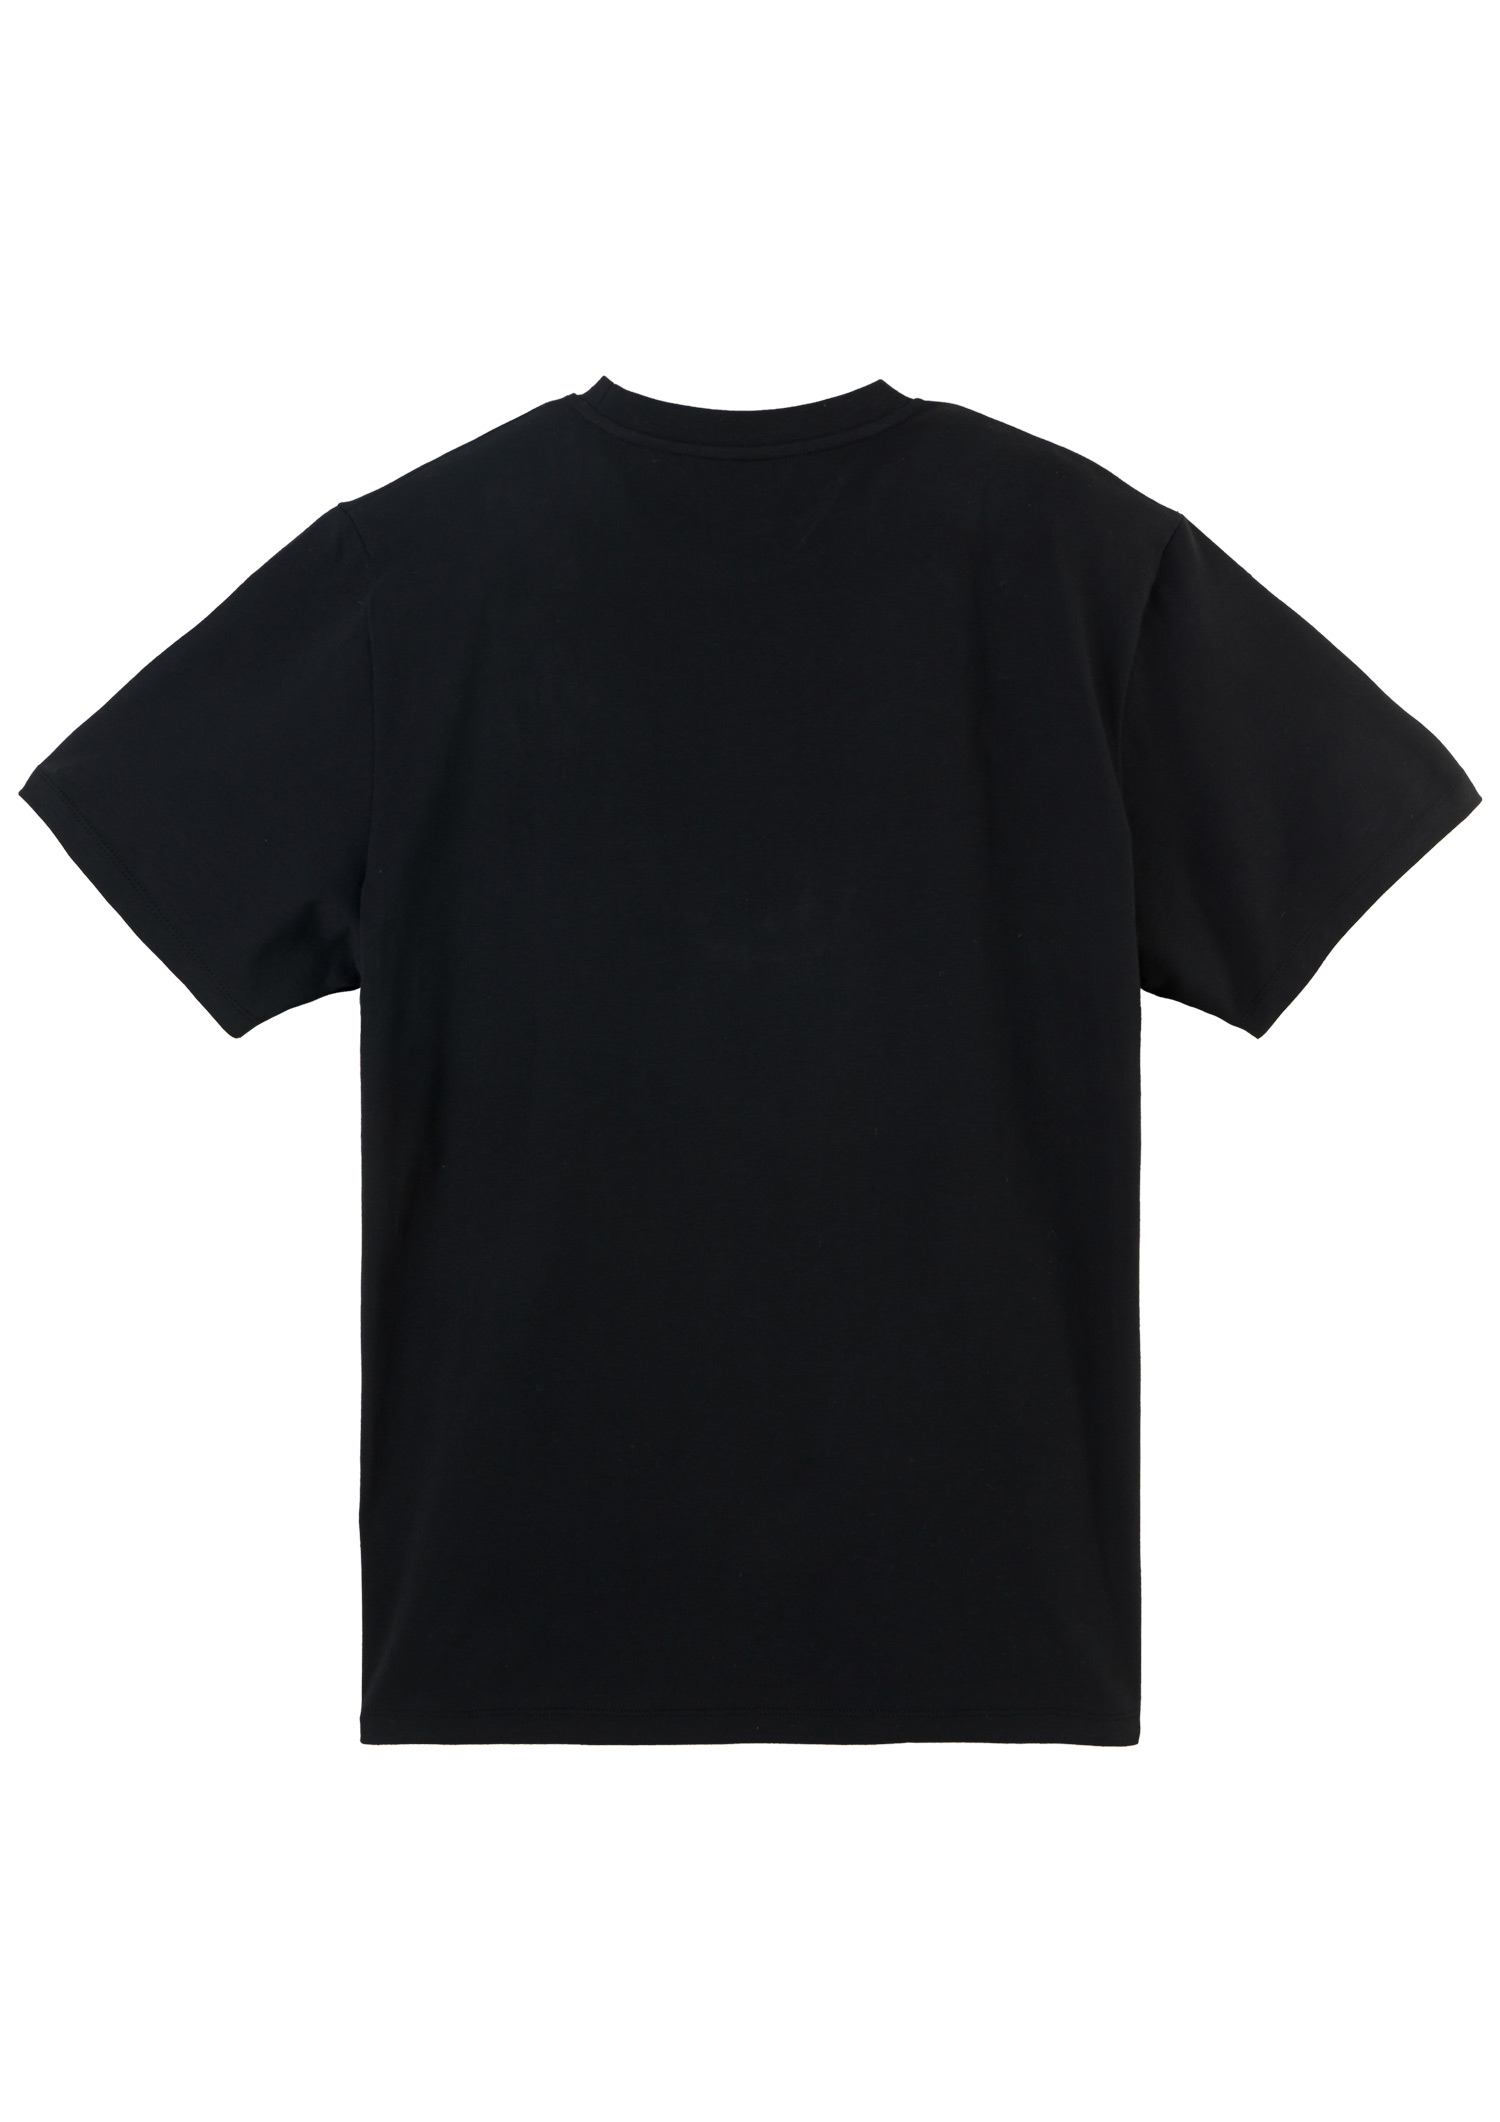 T-Shirt Anti-Fascist Totenkopf schwarz